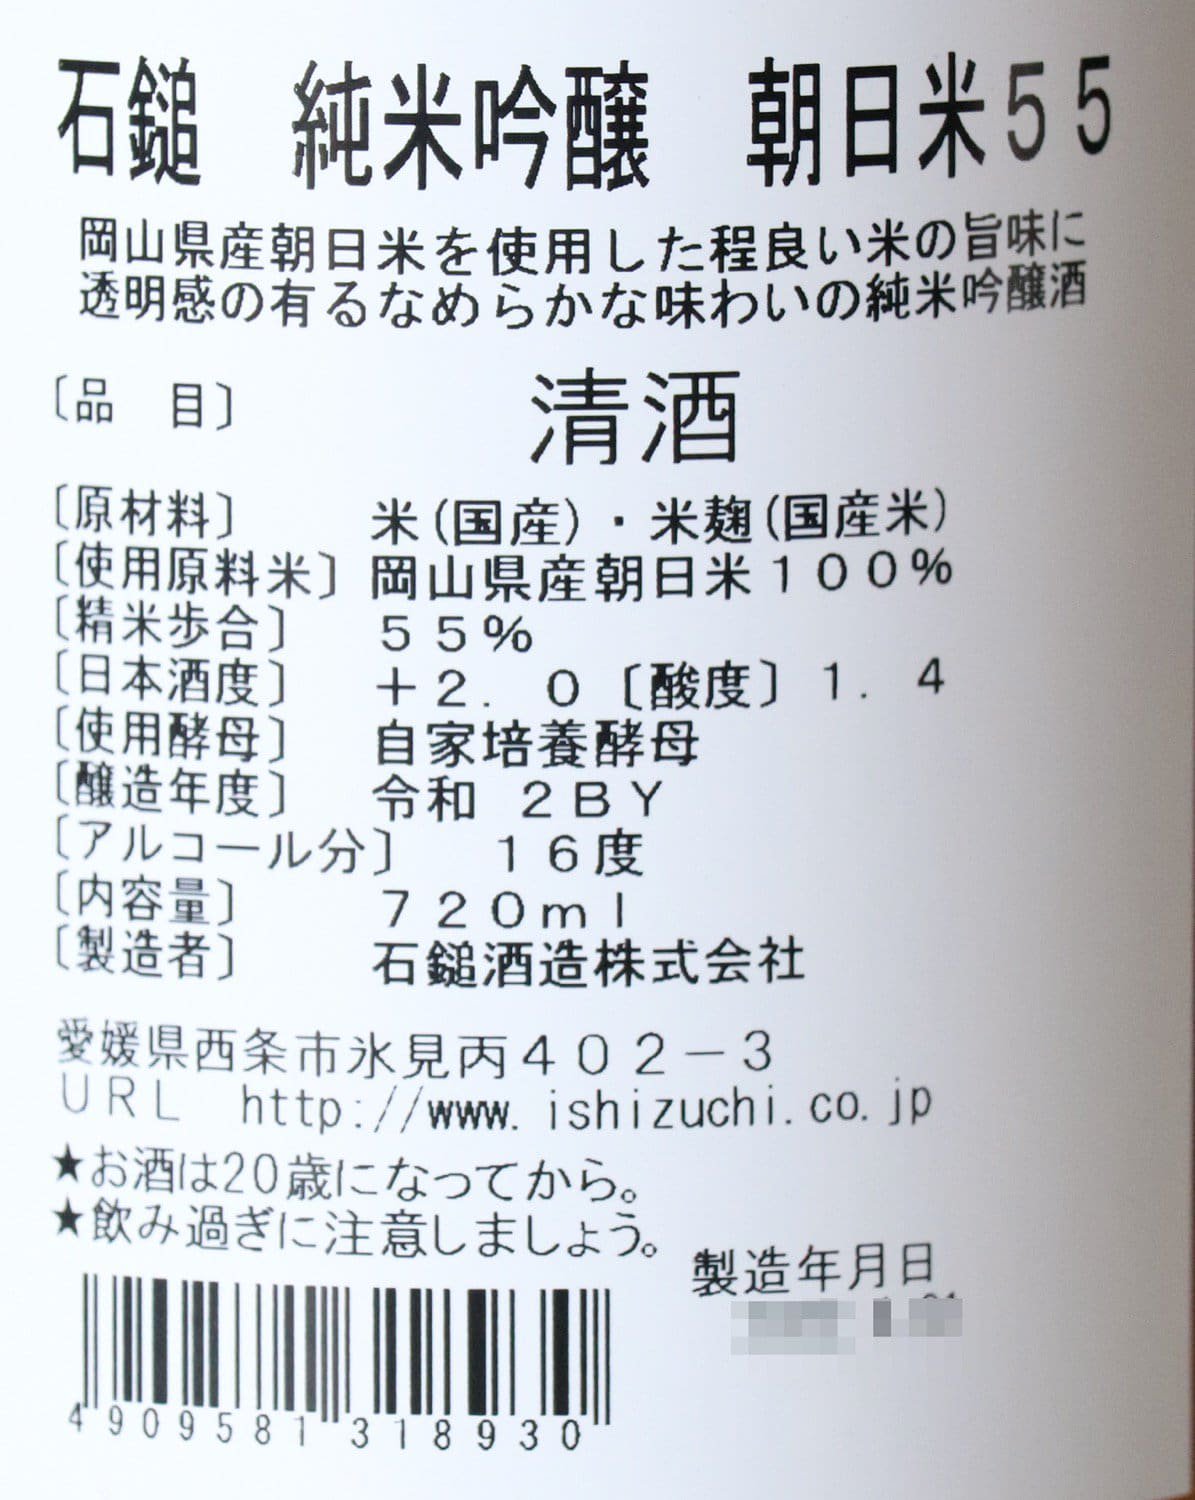 【ハイボール専用純米酒】飛沫-SHIBUKI- 720ml